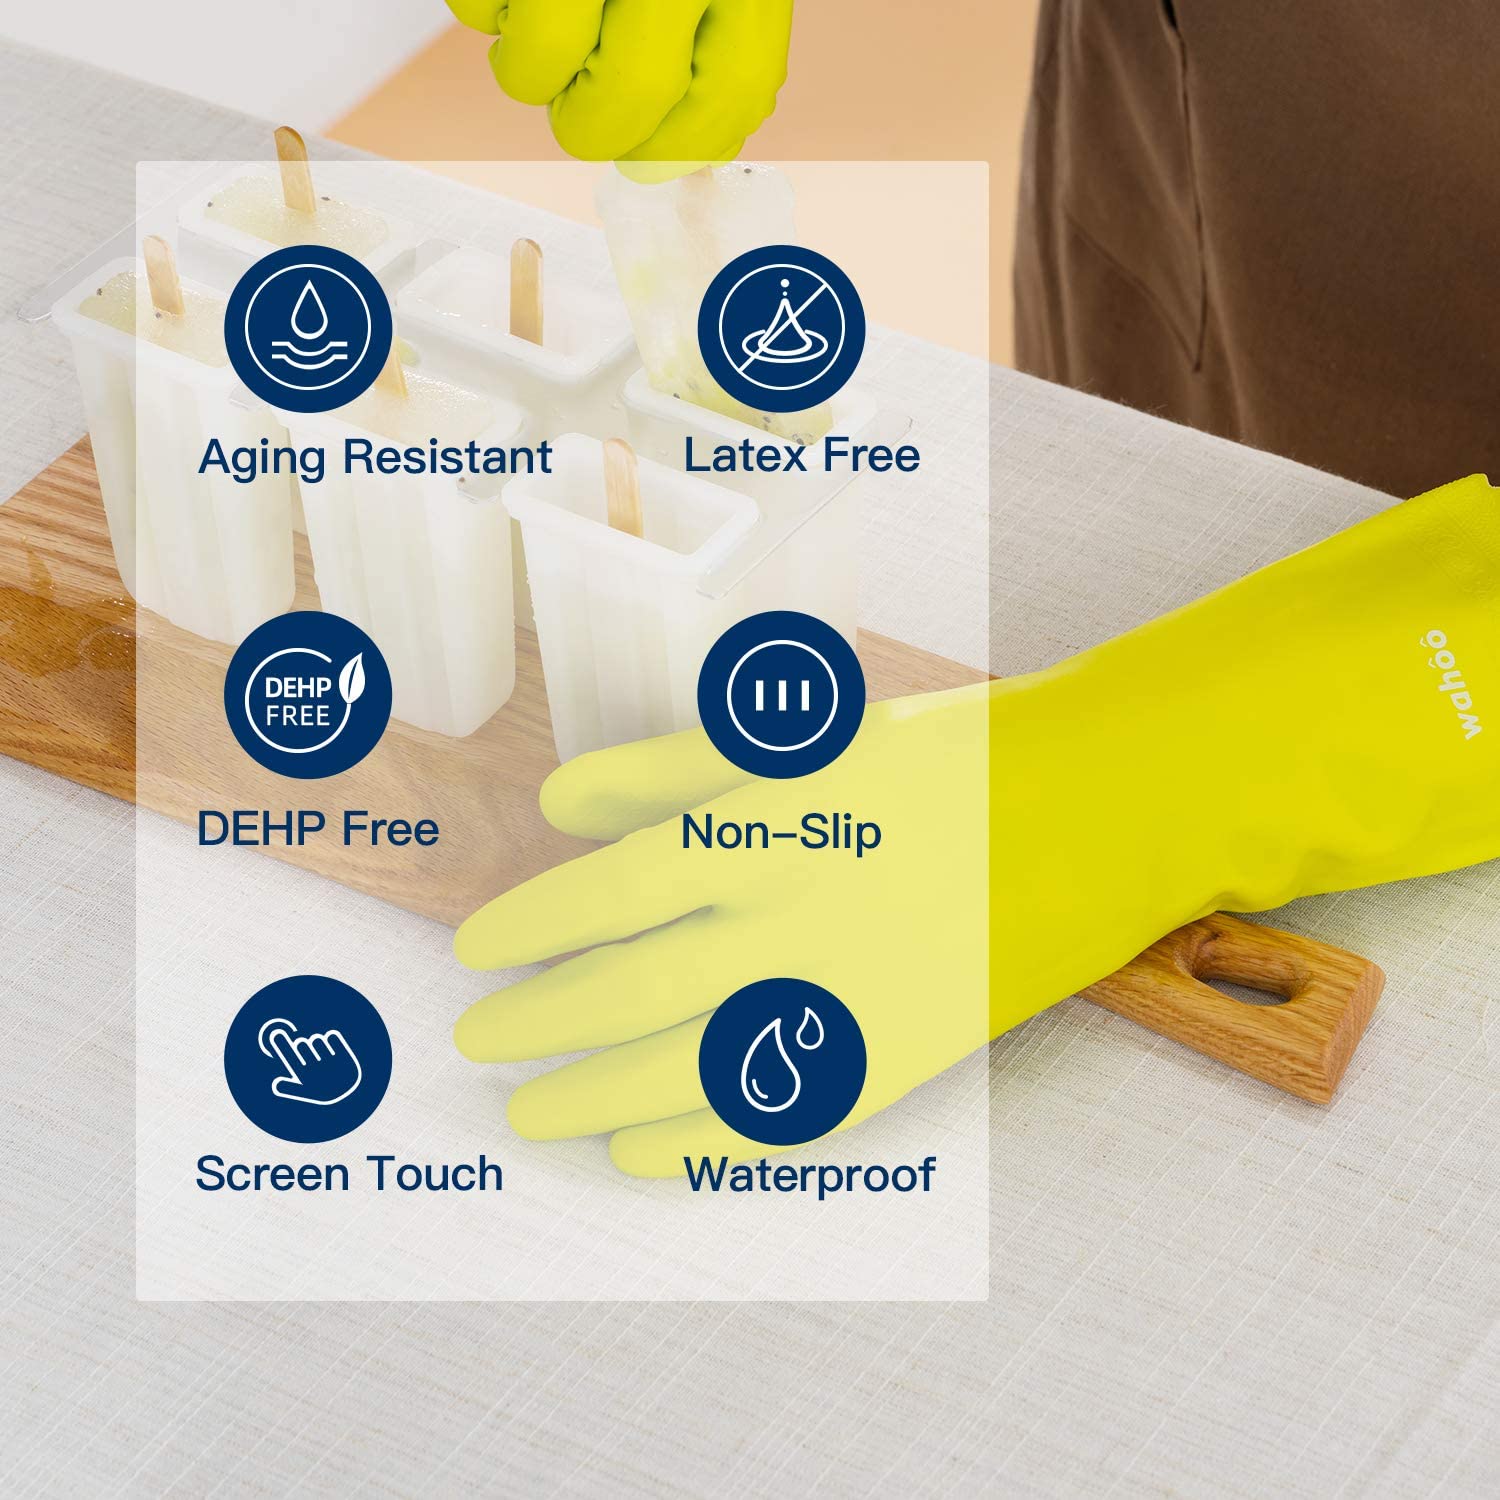 LANON Non-Slip Dishwashing Gloves - 3 pairs – London Sunshine®